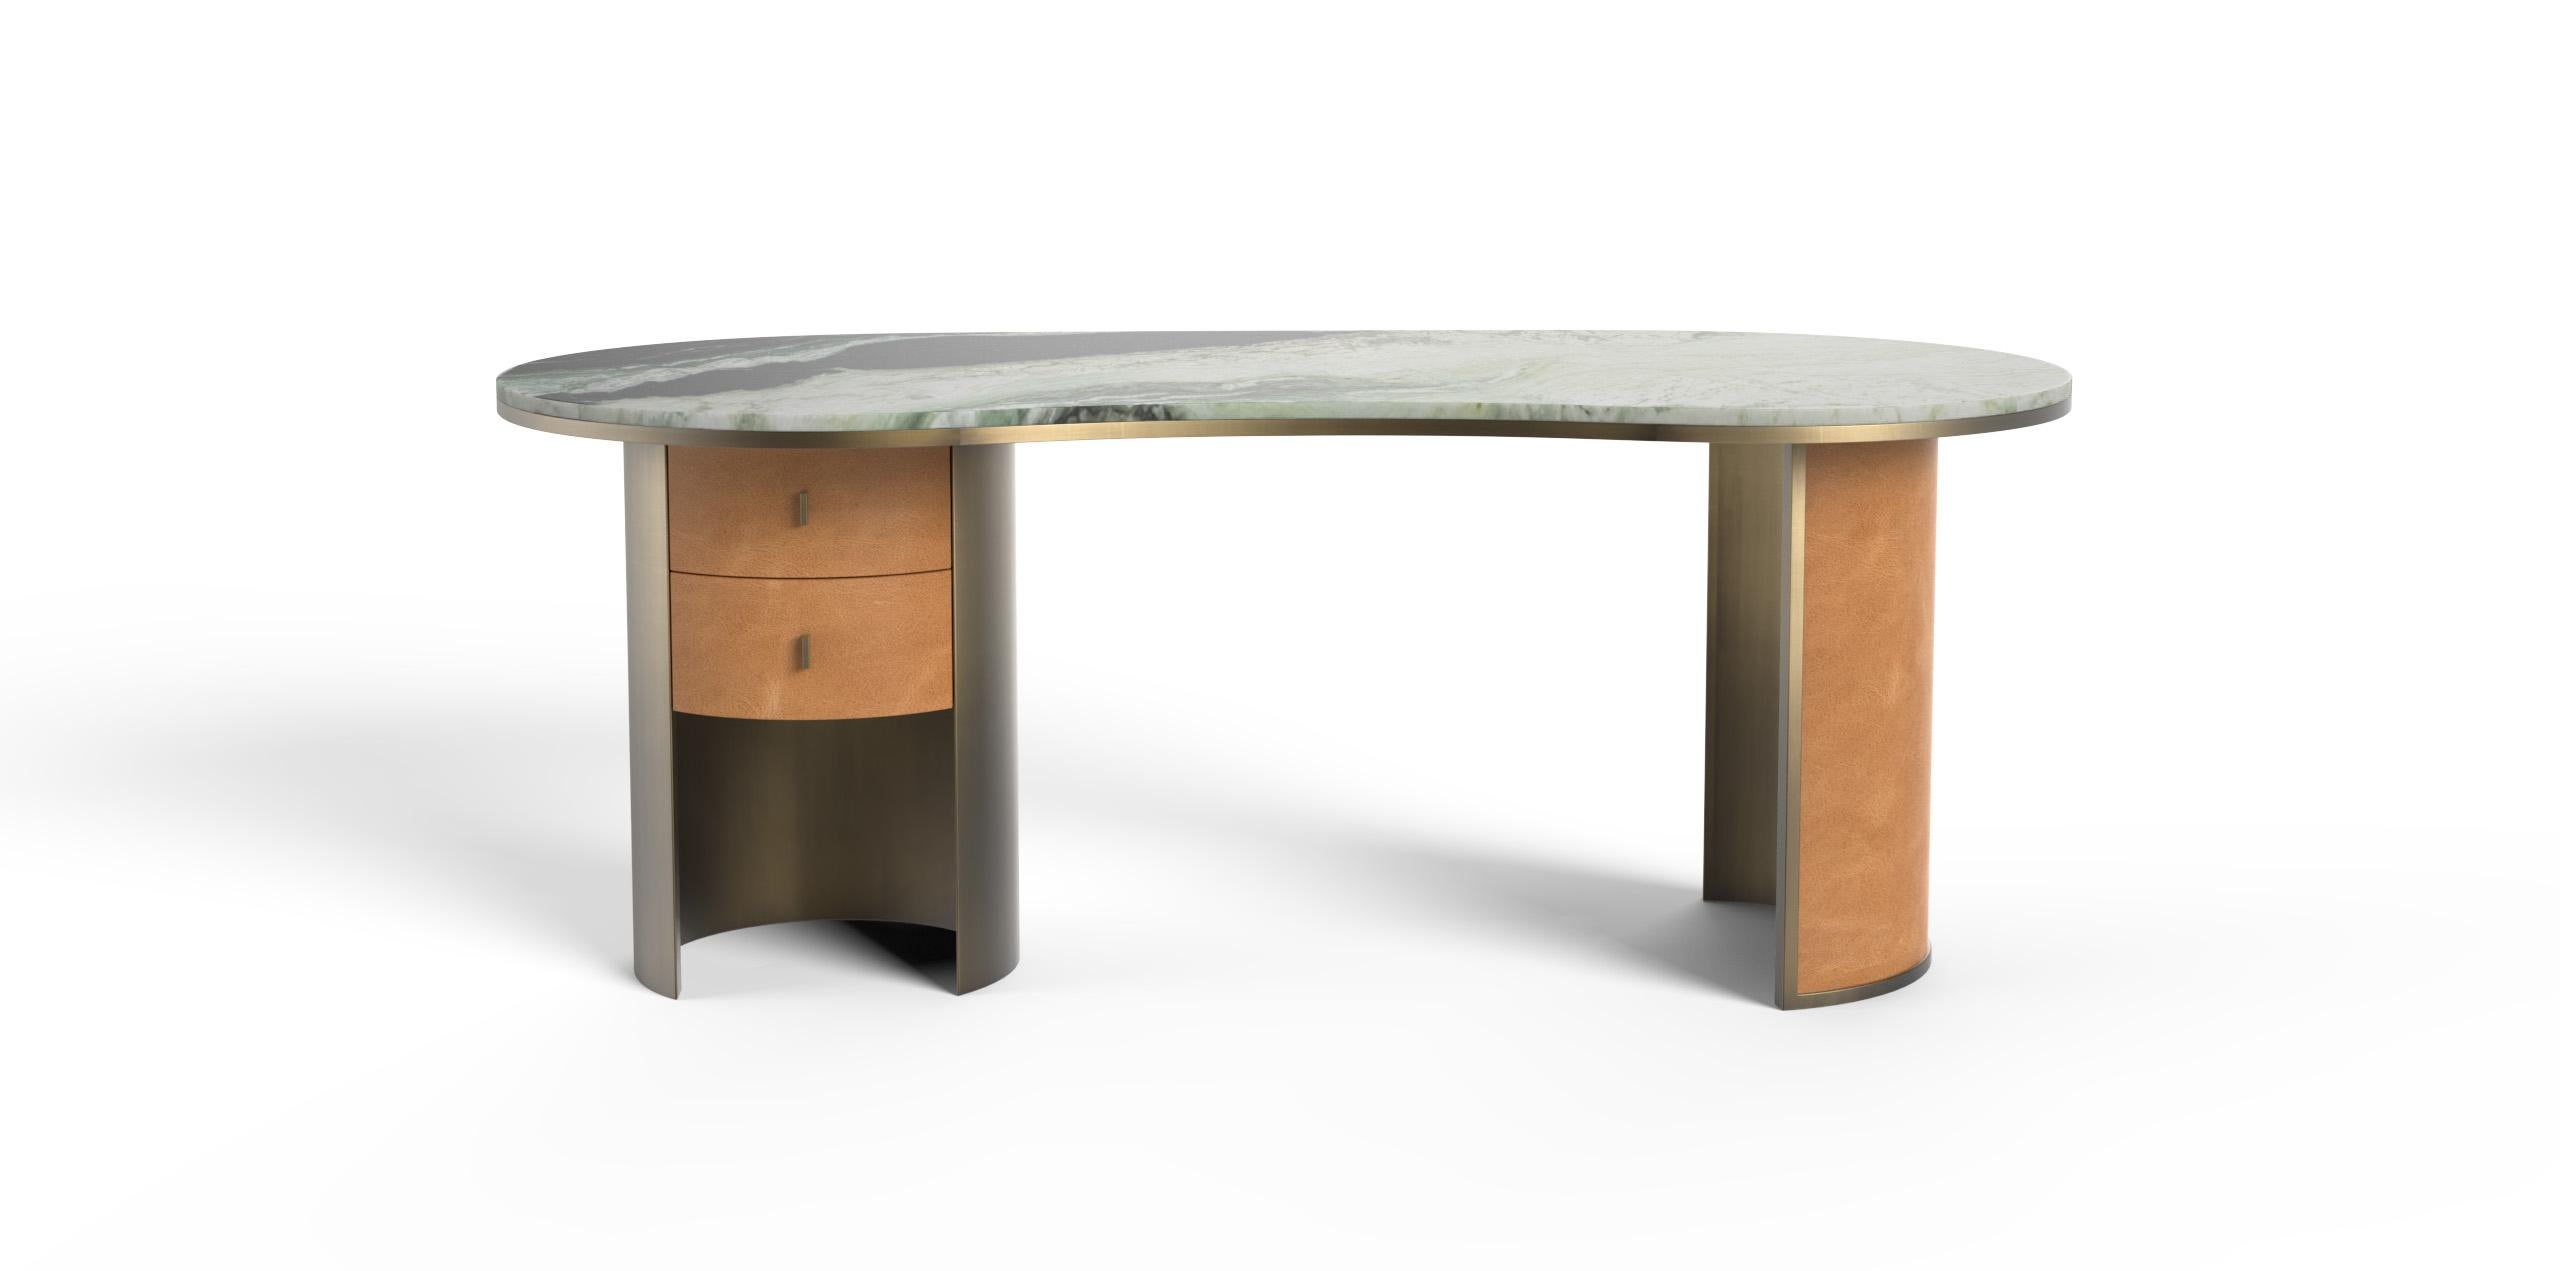 Castelo Desk, Collection'S Contemporary, handgefertigt in Portugal - Europa von Greenapple.

Der von Rute Martins für die Contemporary Collection entworfene moderne Tisch Castelo ist eine Hommage an die Schlösser, die in der historischen